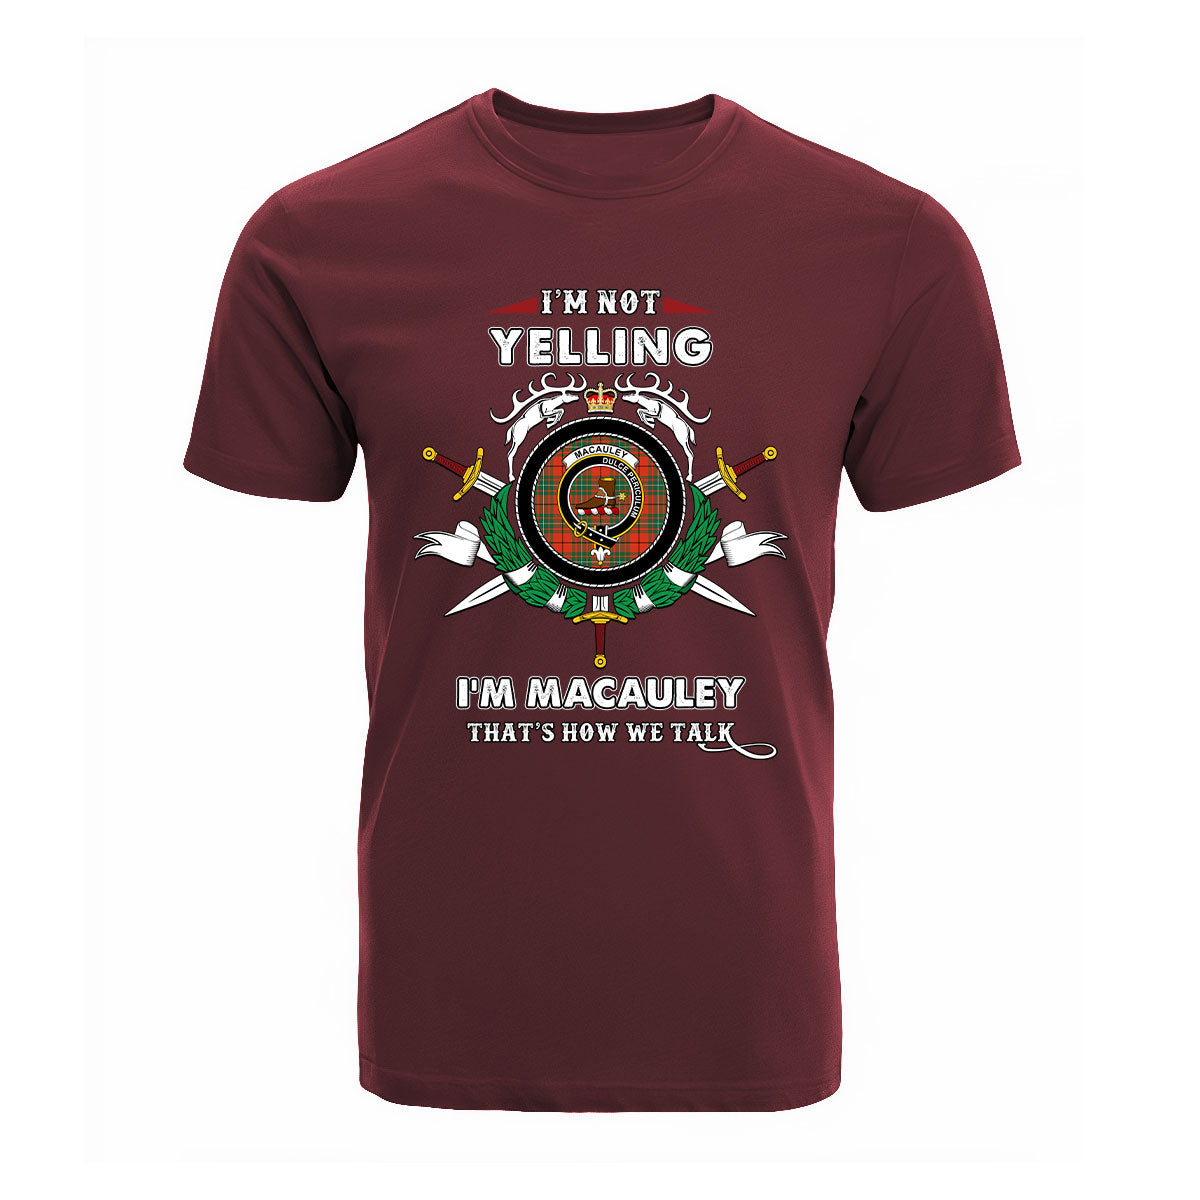 MacAuley Tartan Crest T-shirt - I'm not yelling style